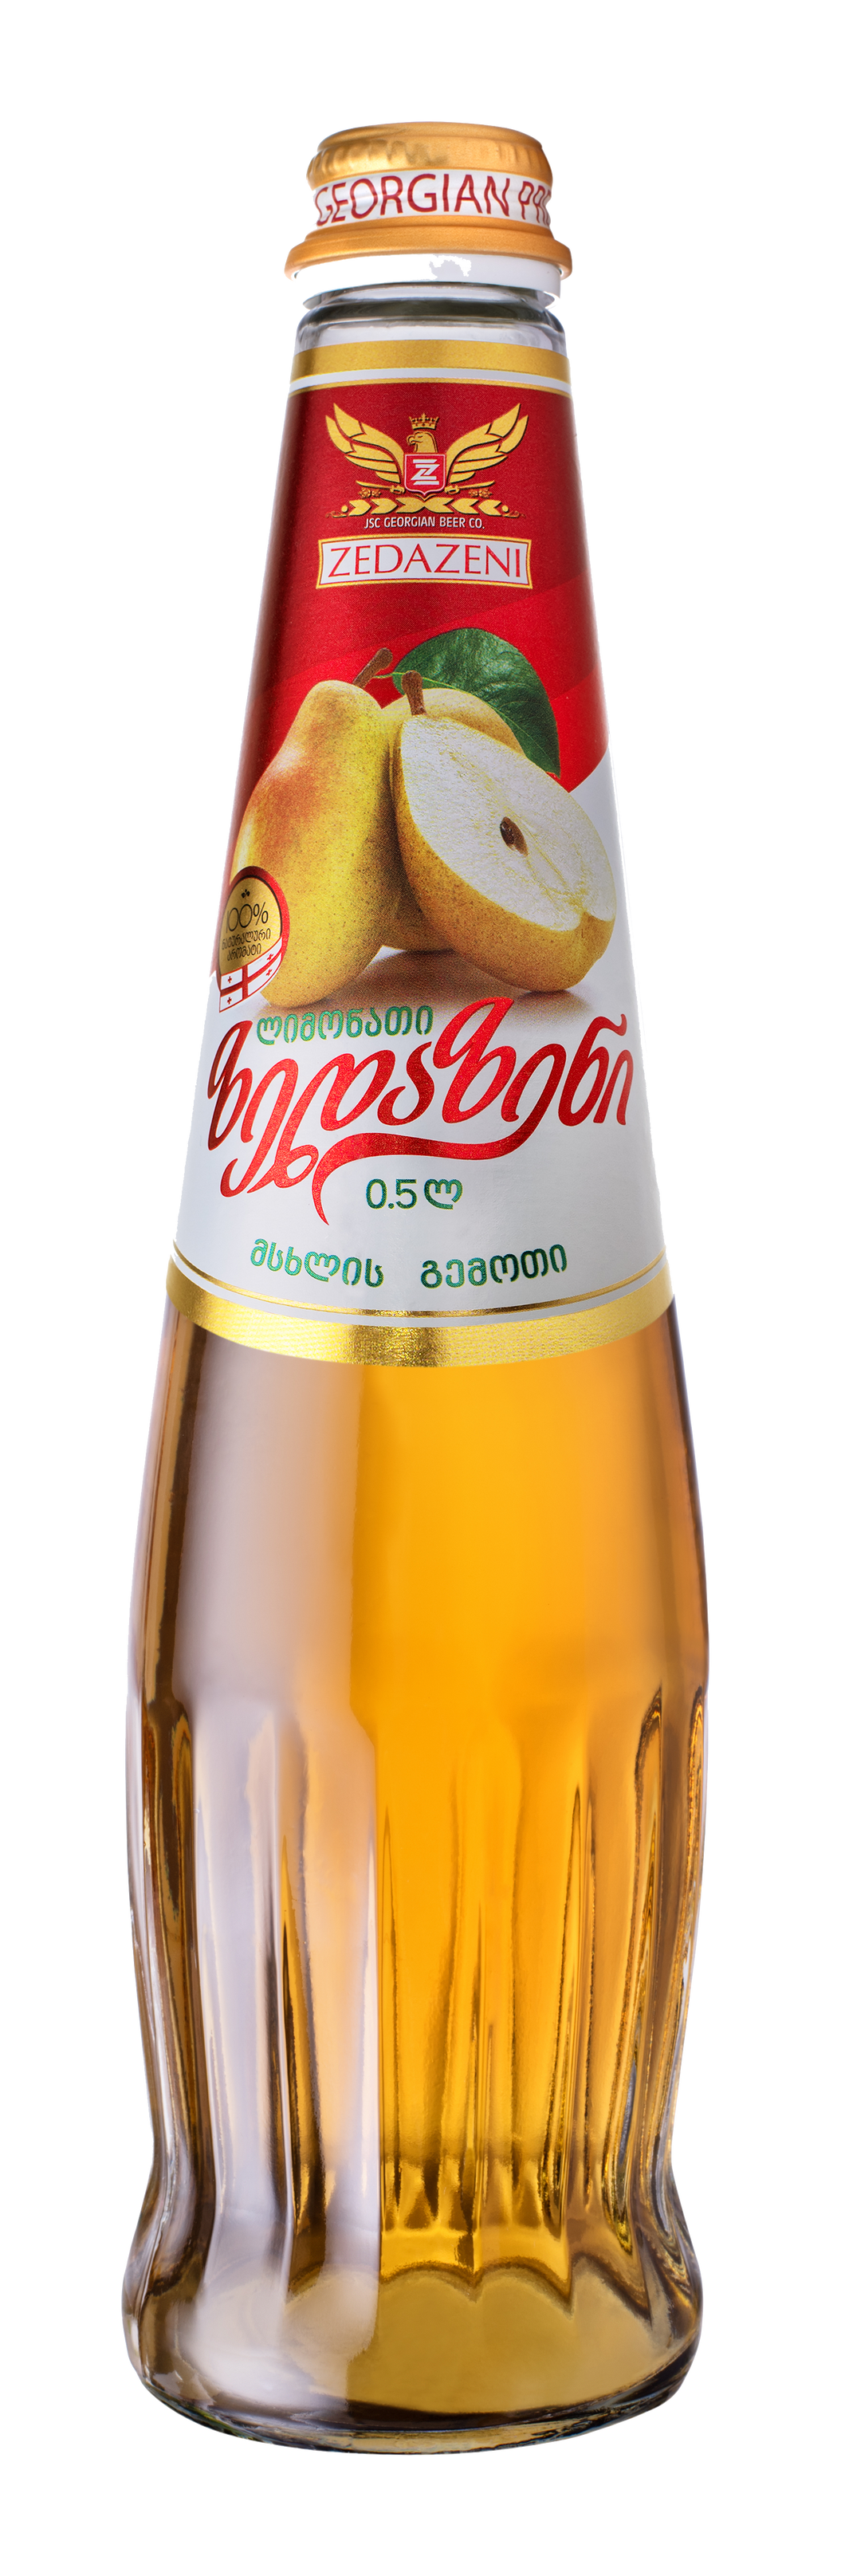 Pear Lemonade 1L - ზედაზენი მსხლის ლომონათი 1ლ